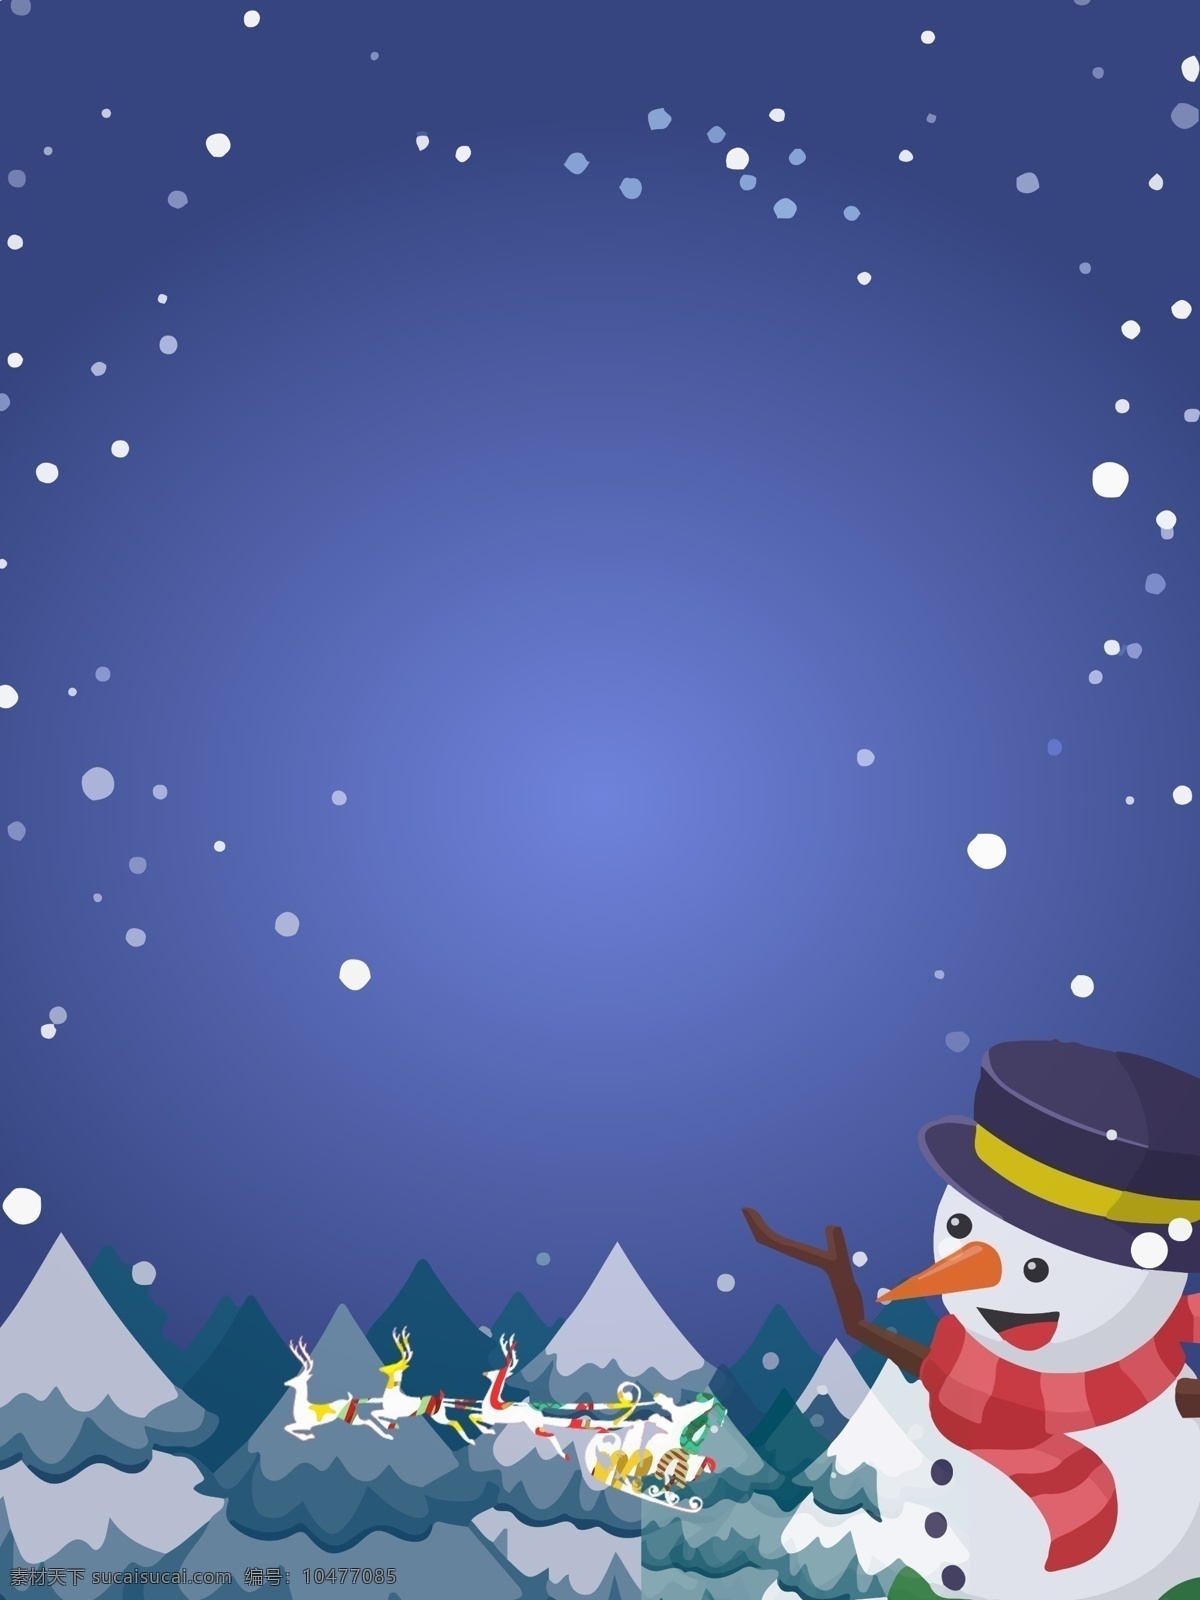 圣诞 狂欢 购 雪人 背景 手绘背景 圣诞快乐 水彩背景 平安夜 圣诞节促销 冬至